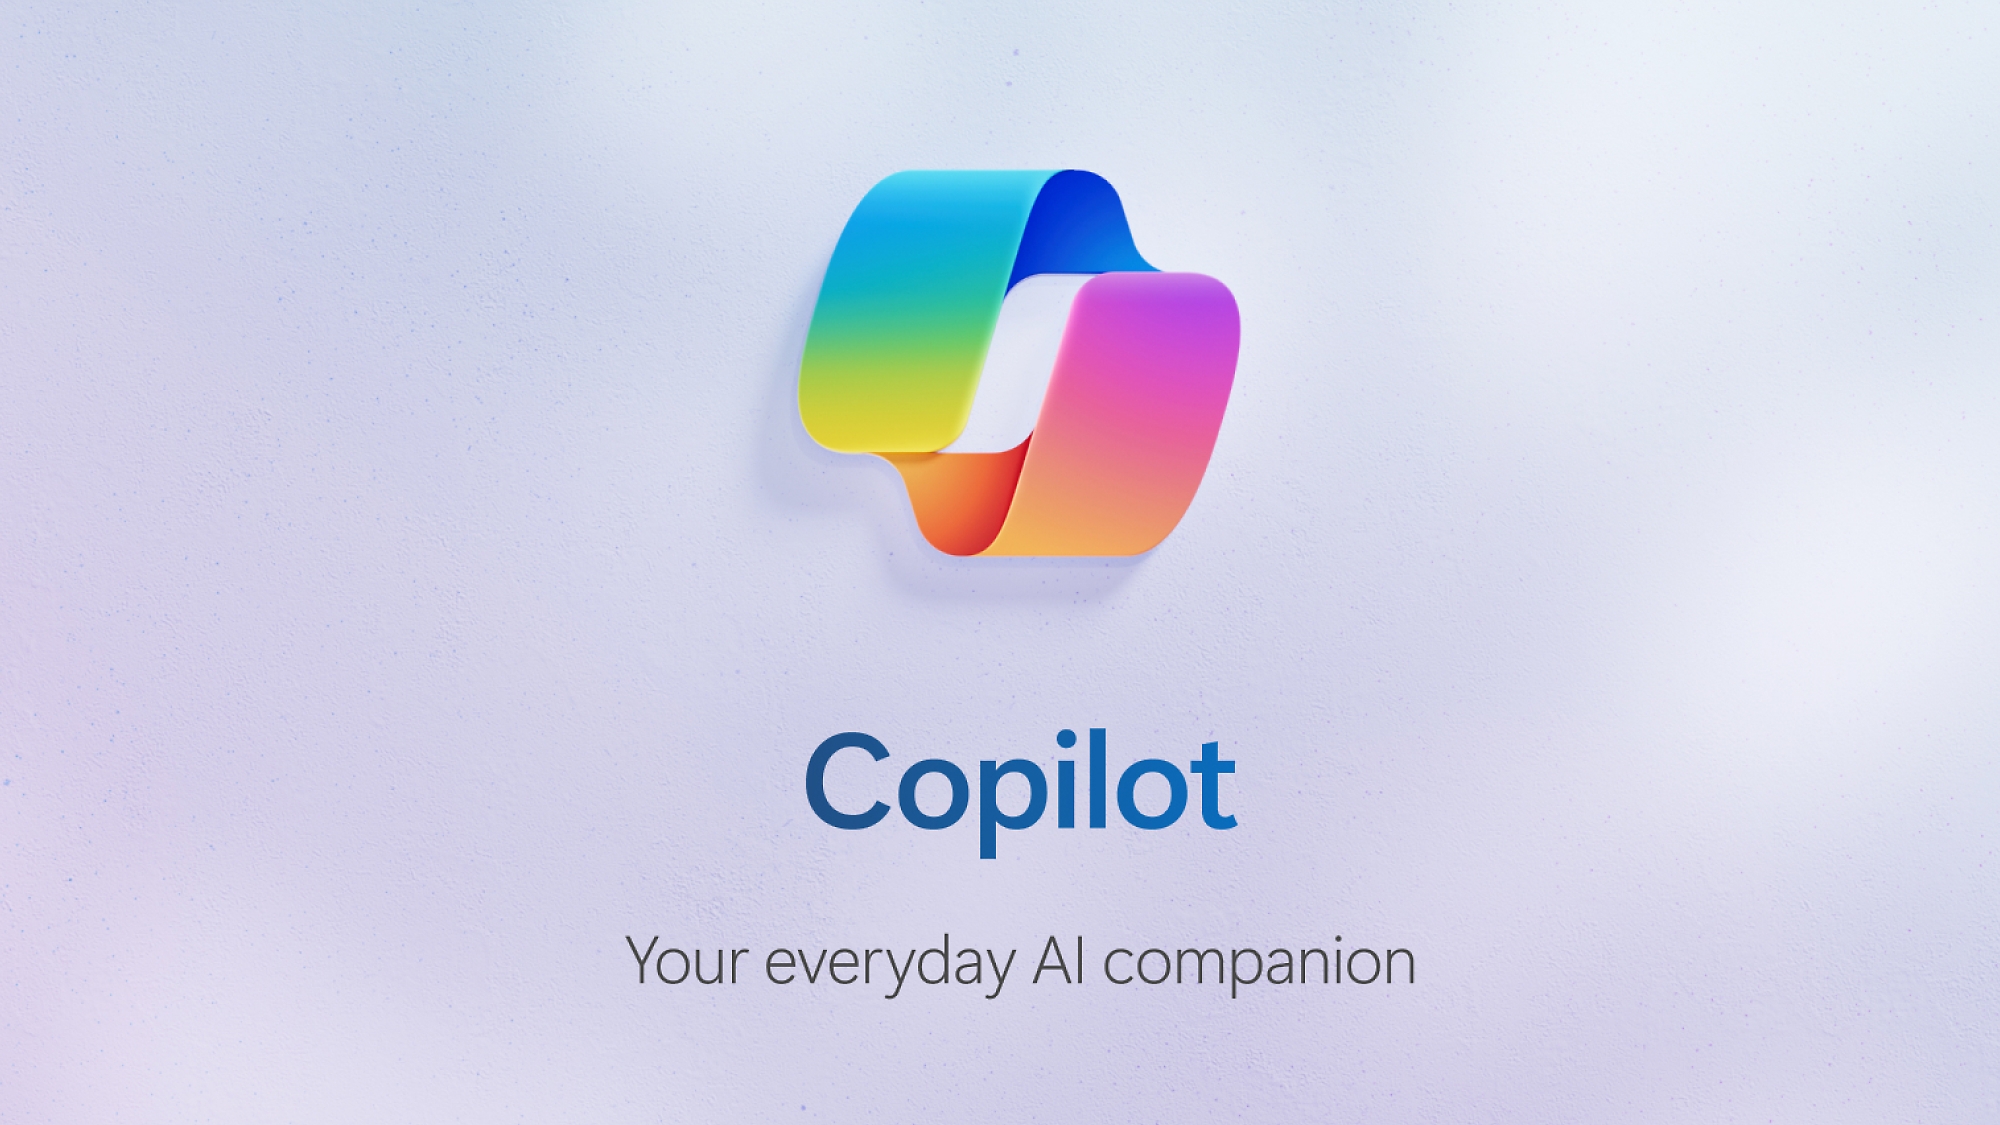 Copilot-videon pikkukuva, jossa on Copilot-logo